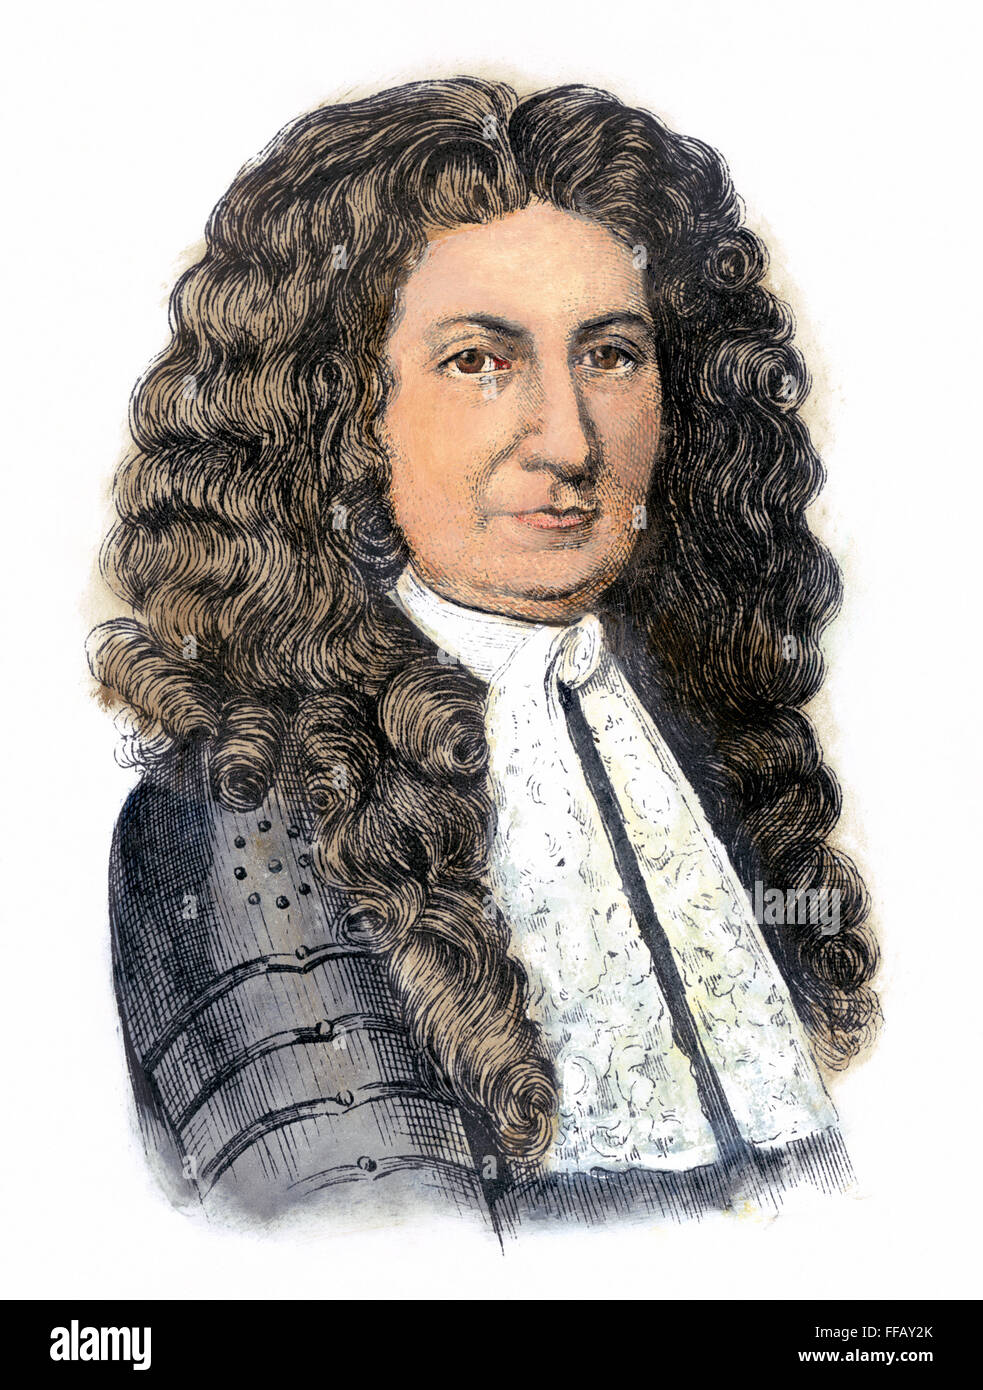 EDMUND ANDROS (1637-1714). /NBritish gouverneur colonial en Amérique. Gravure couleur, 19e siècle. Banque D'Images